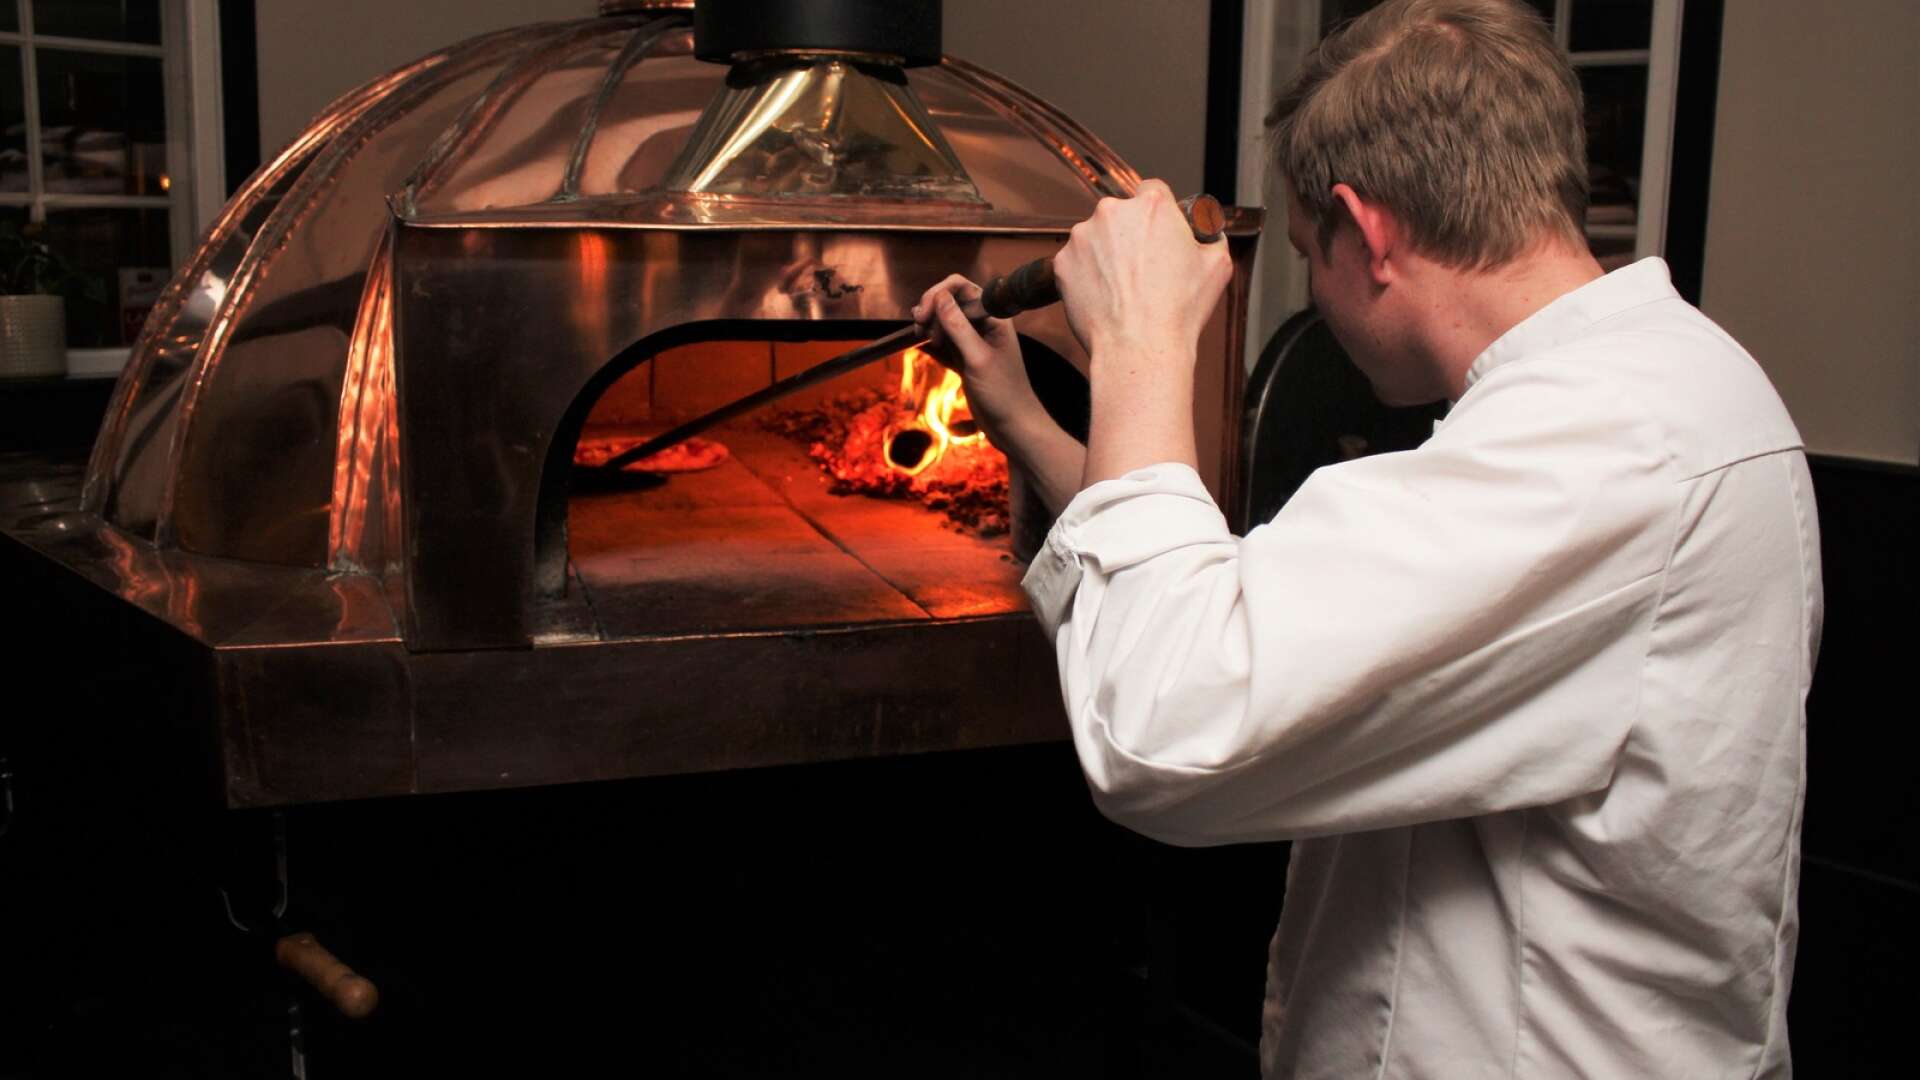 Markus Enocksson skyfflar in ännu en pizza i den nya vedugnen. Det tar inte många sekunder innan pizzan är klar i den 500-gradiga värmen så det gäller att vara på tårna och snurra pizzan ofta.